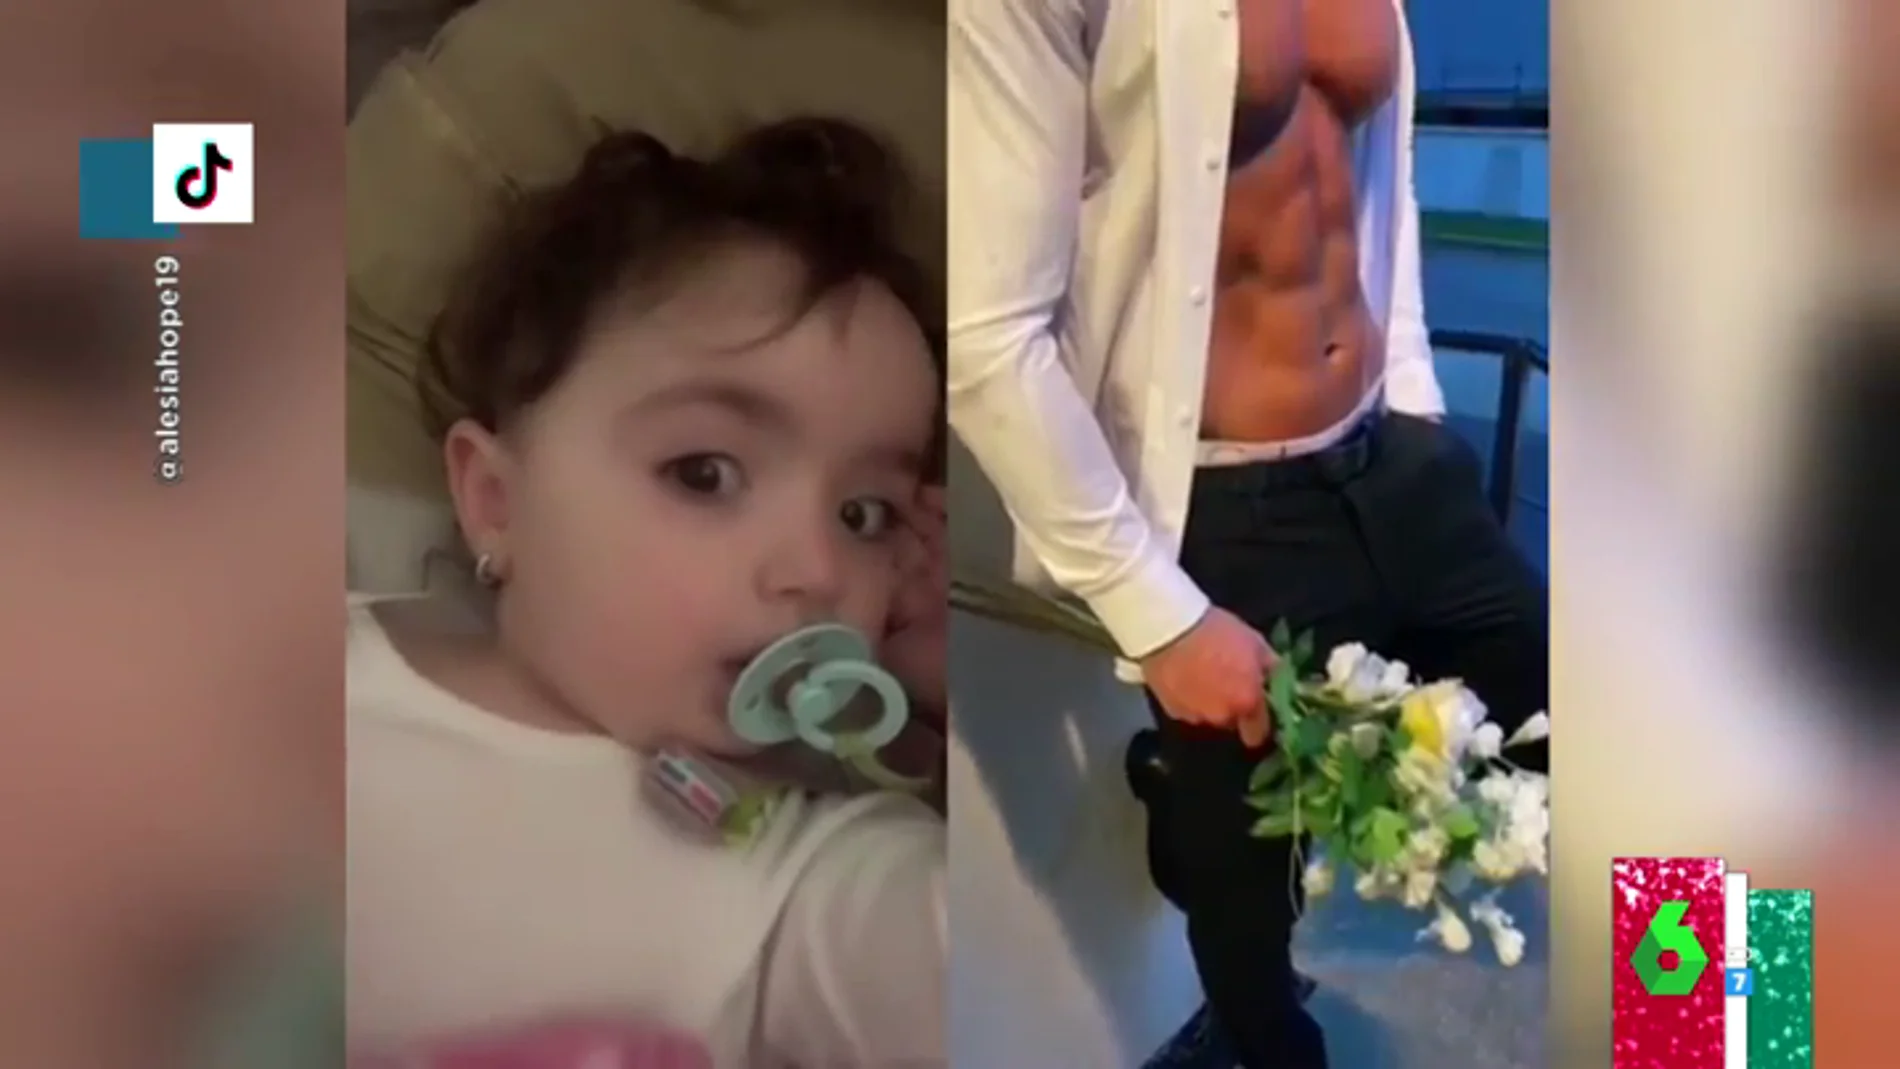 La reacción viral de una bebe al ver un vídeo de un chico con abdominales